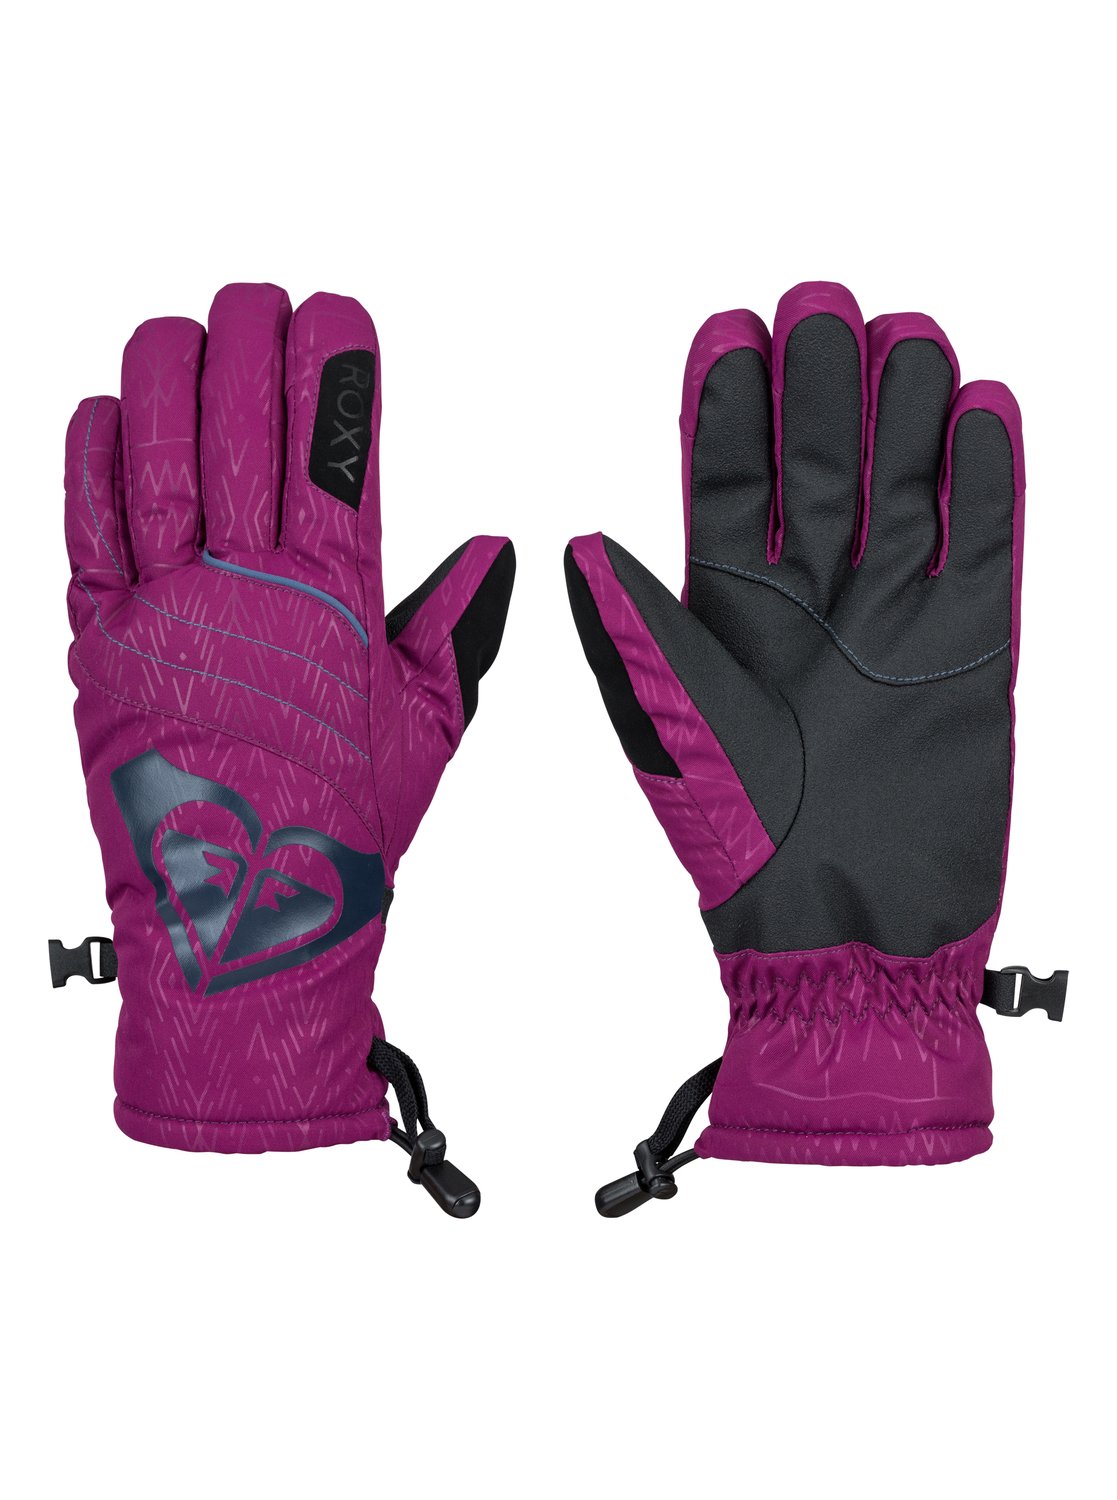 Розовые перчатки сноубордические roxy. DG сноубордические перчатки. Перчатки левел сноубордические. Рокси перчатки женские. Сноубордические перчатки reucsh.